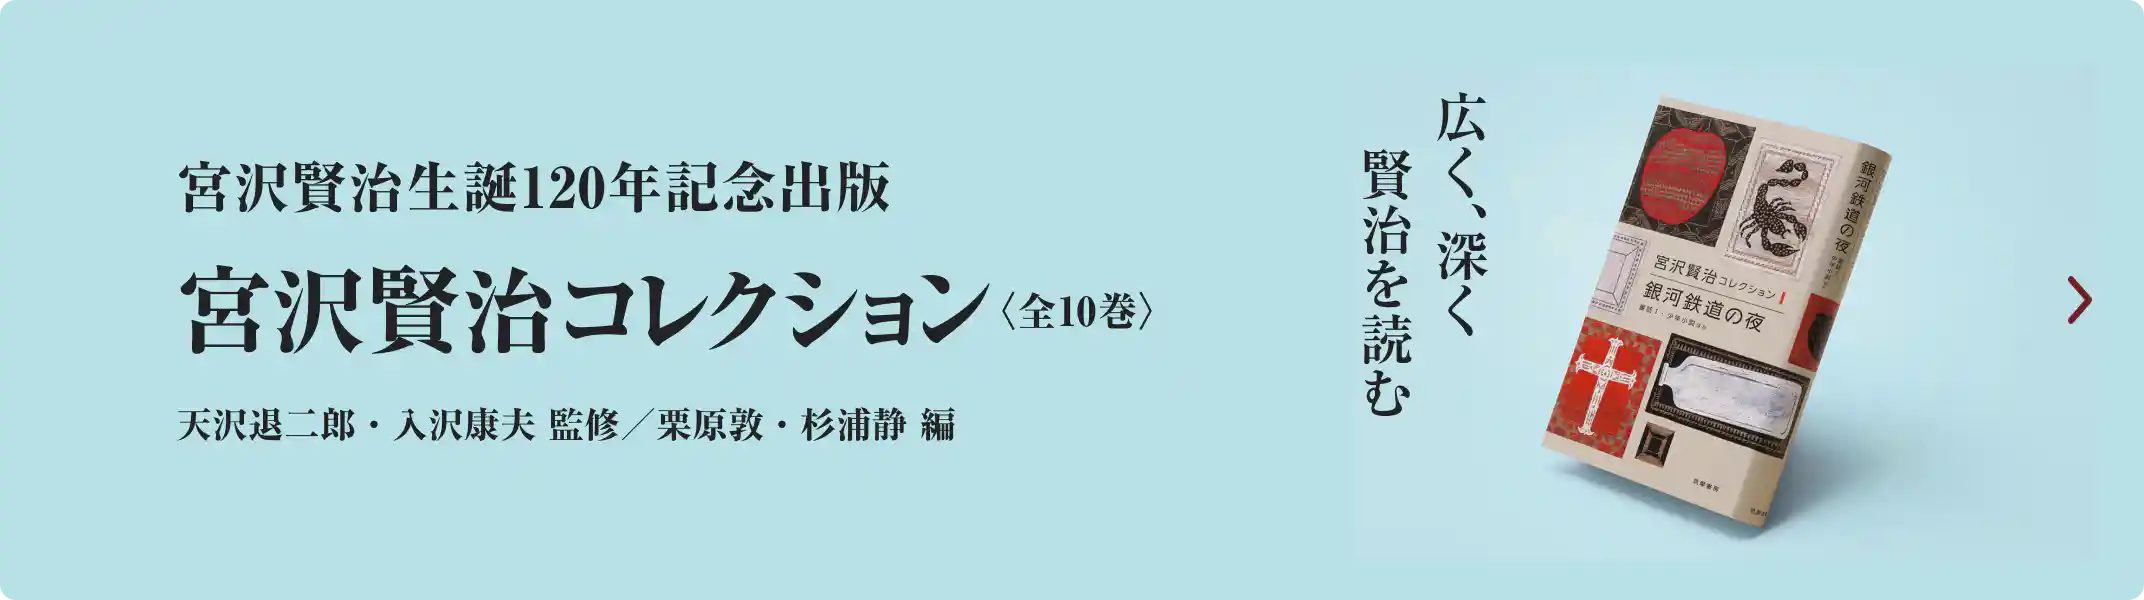 宮沢賢治生誕120周年記念出版『宮沢賢治コレクション』広く、深く賢治を読む